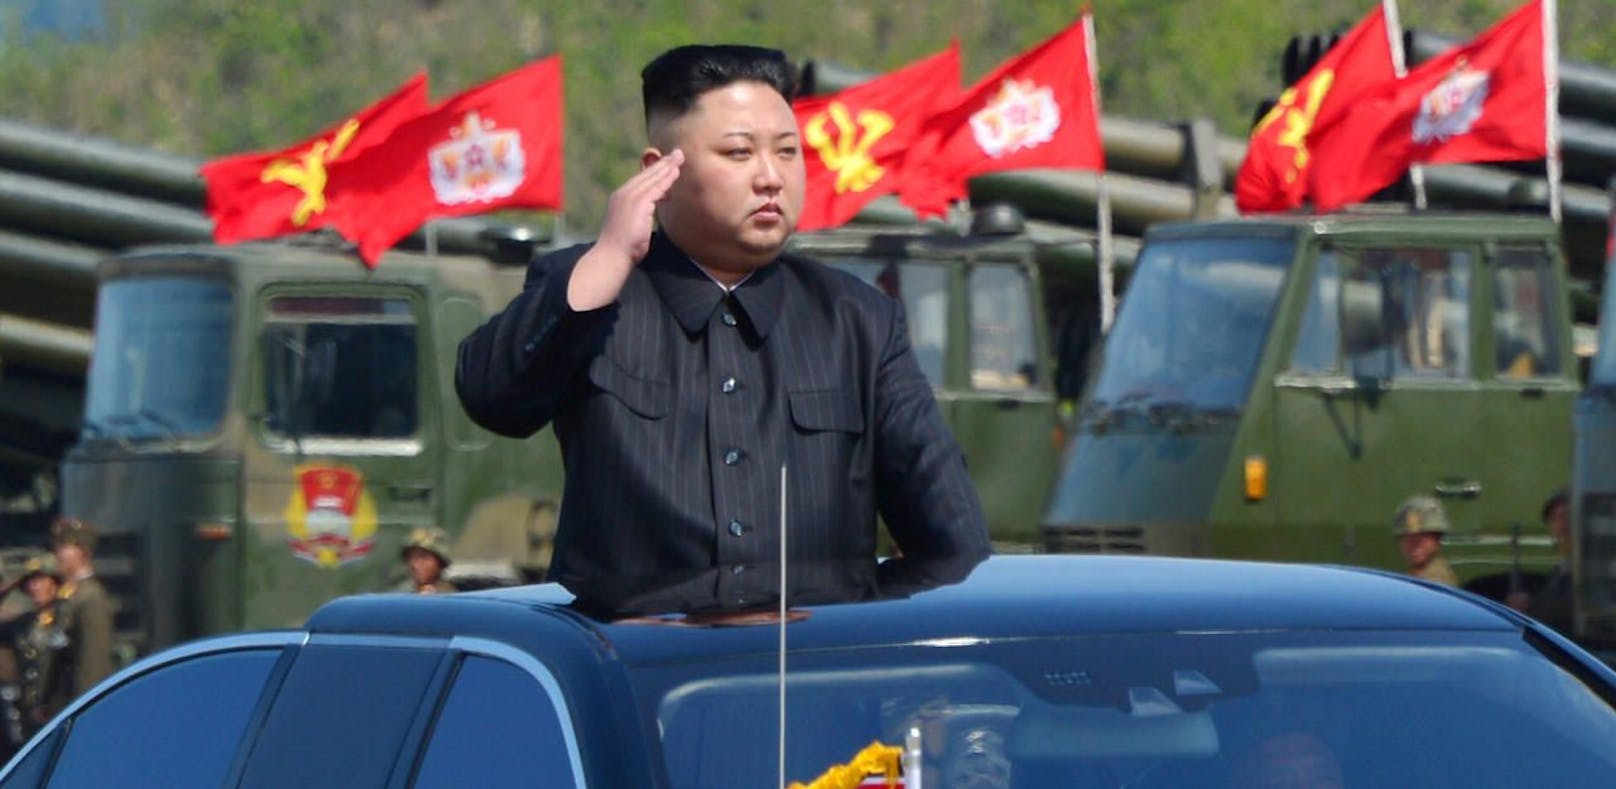 Nordkorea warnt: China "überschreitet rote Linie"